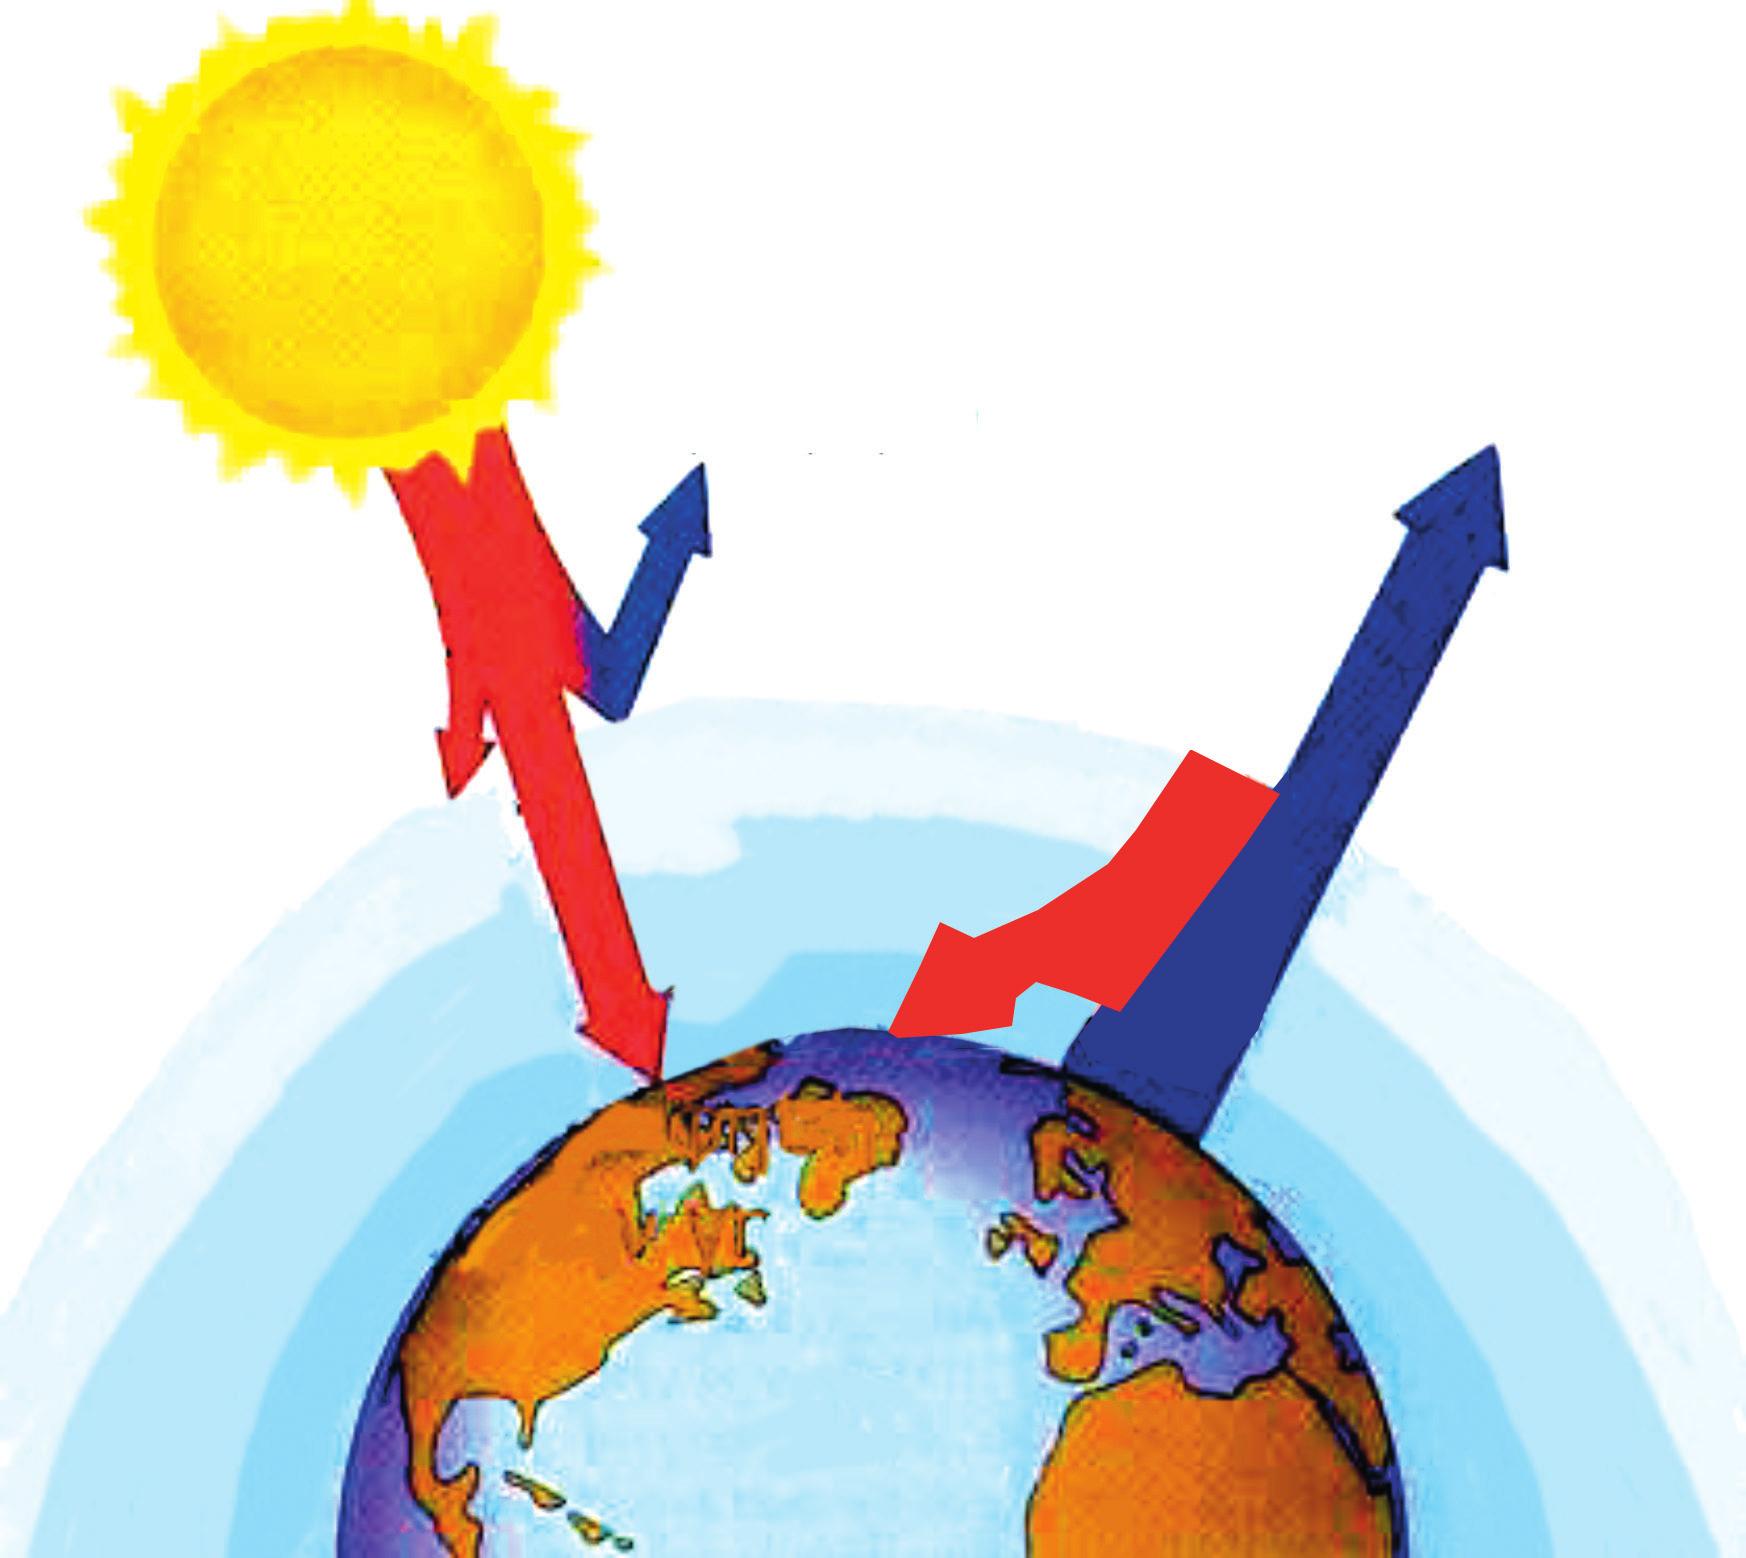 ανάκλαση από την ατμόσφαιρα ακτινοβολία από τη γη ηλιακή ακτινοβολία φαινόμενο θερμοκηπίου ΣΧΗΜΑ 2.